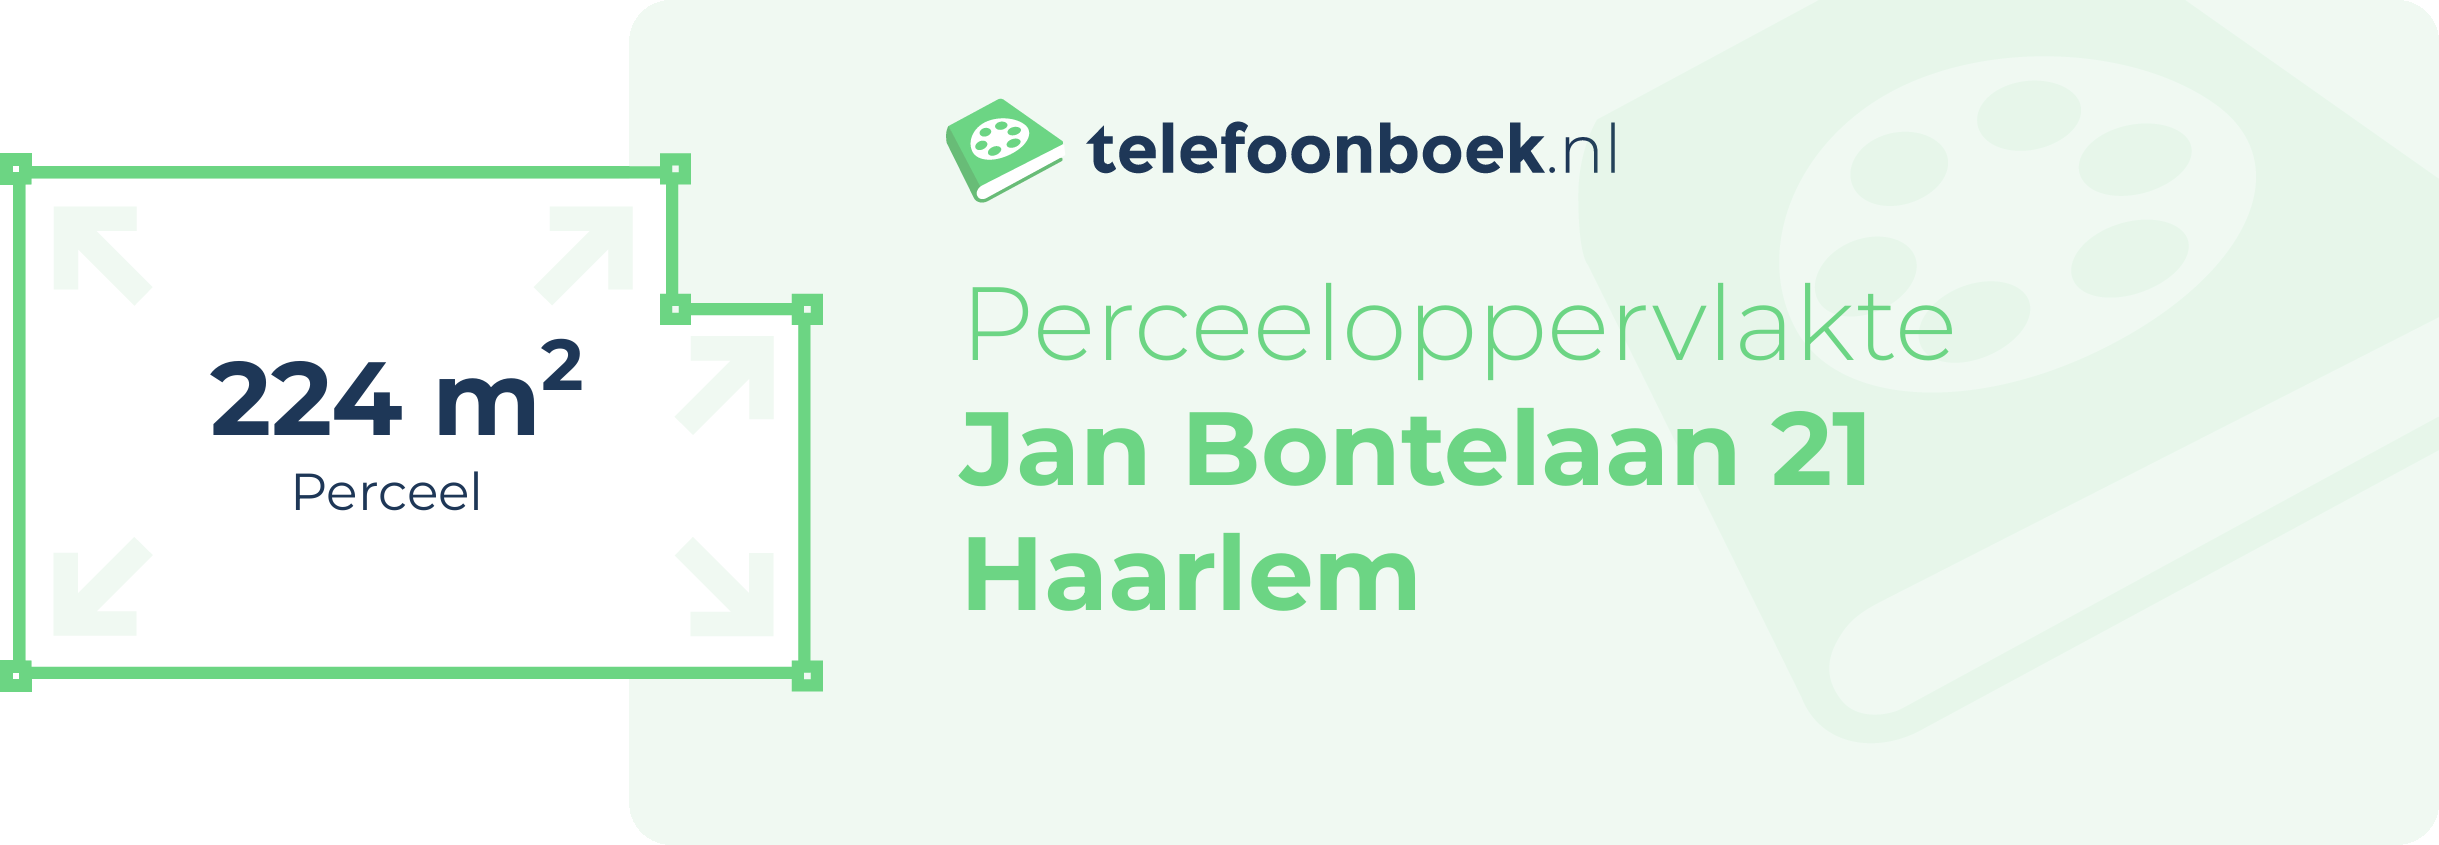 Perceeloppervlakte Jan Bontelaan 21 Haarlem